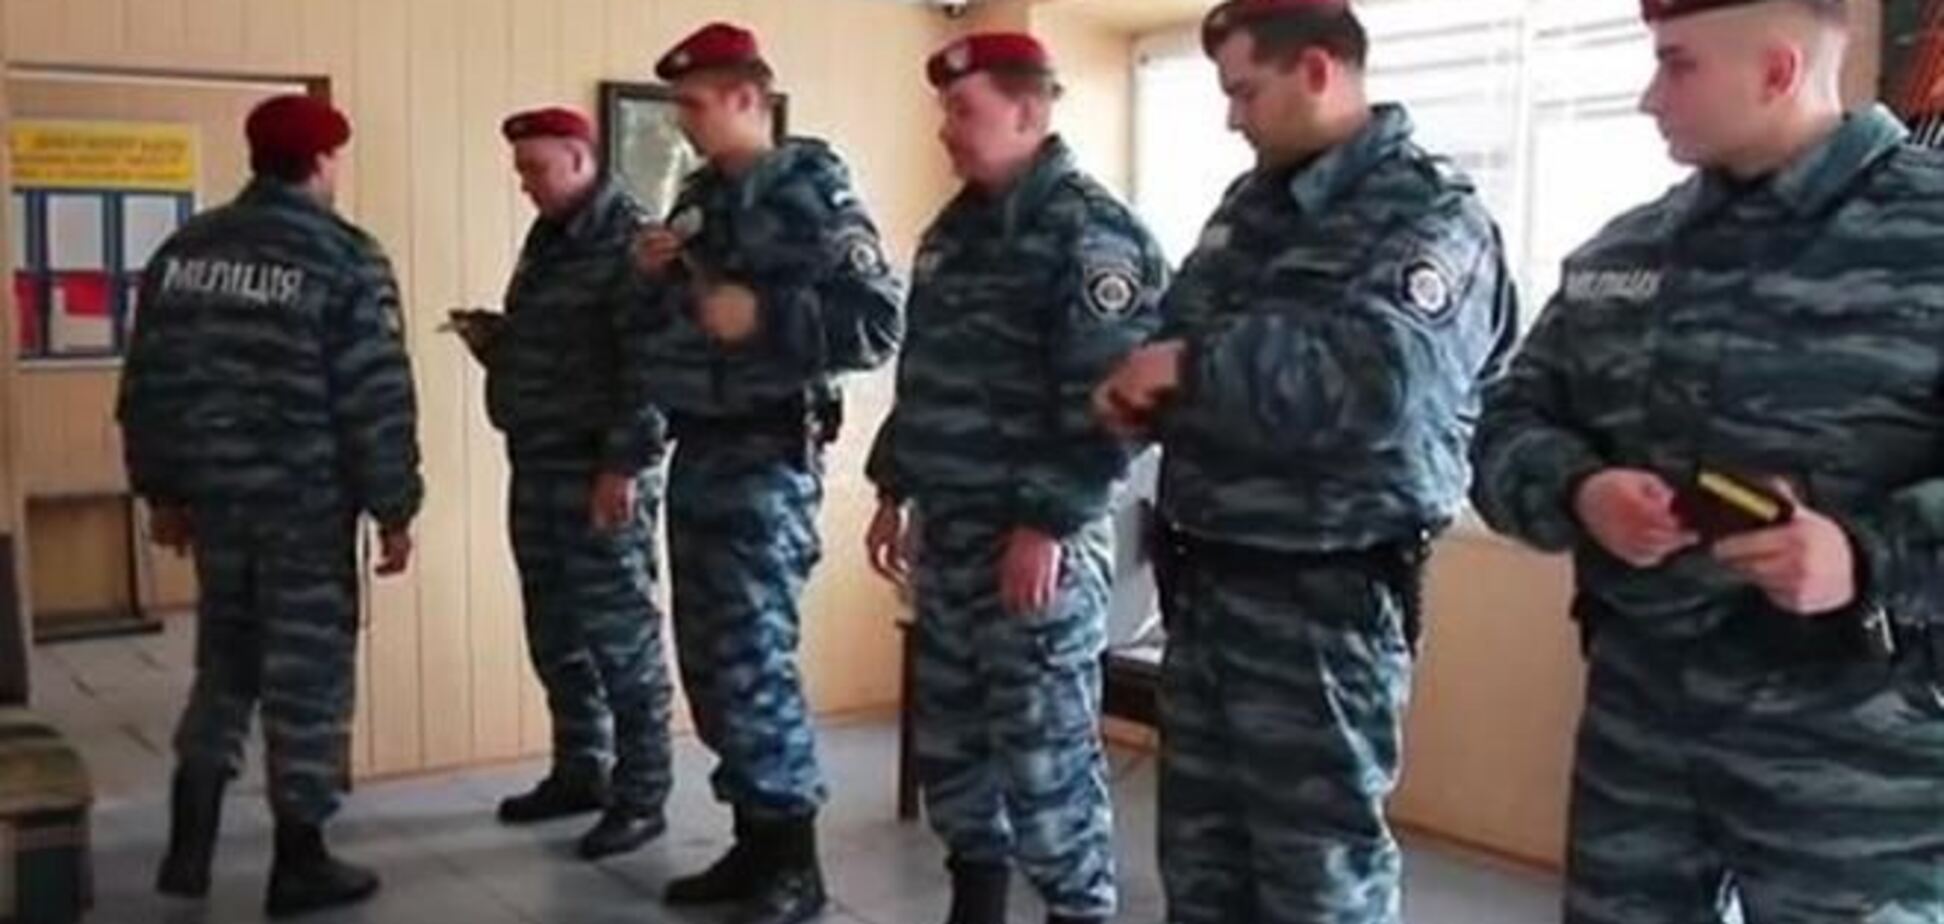 Луганская милиция сняла клип о 'Беркуте' и Евромайдане